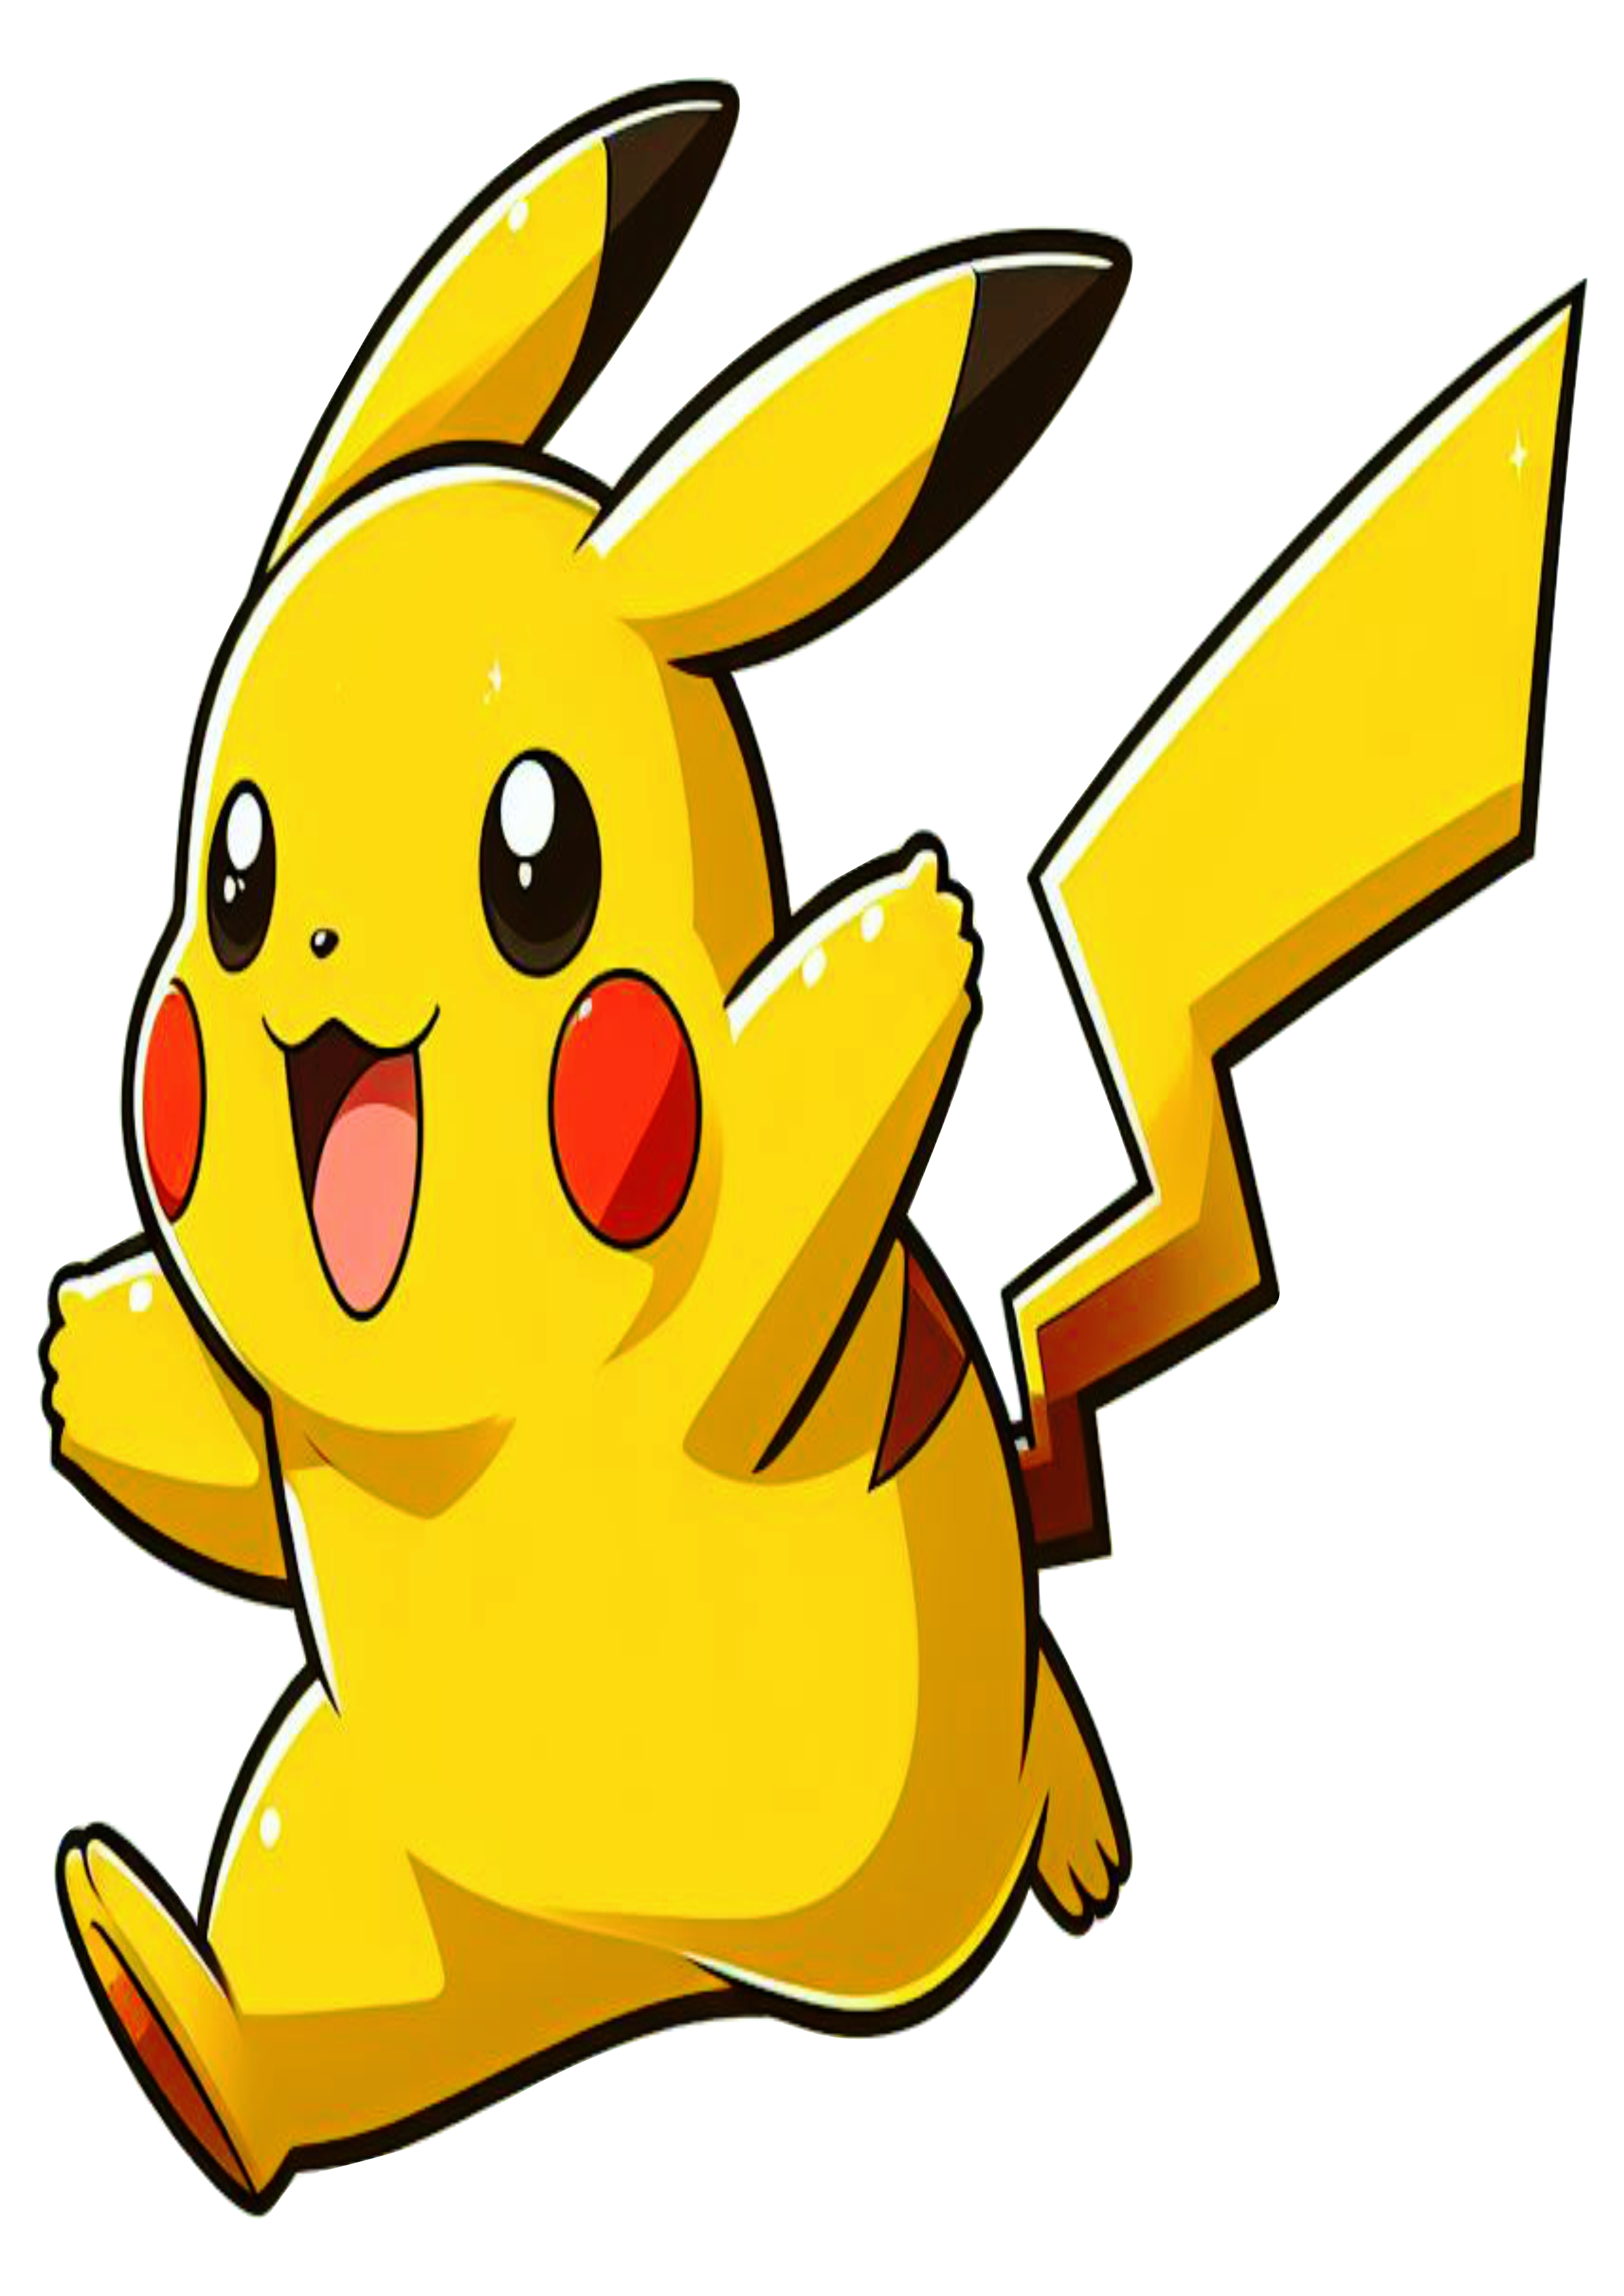 Pokémon png Pikachu anime fundo transparente desenho colorido clipart vetor